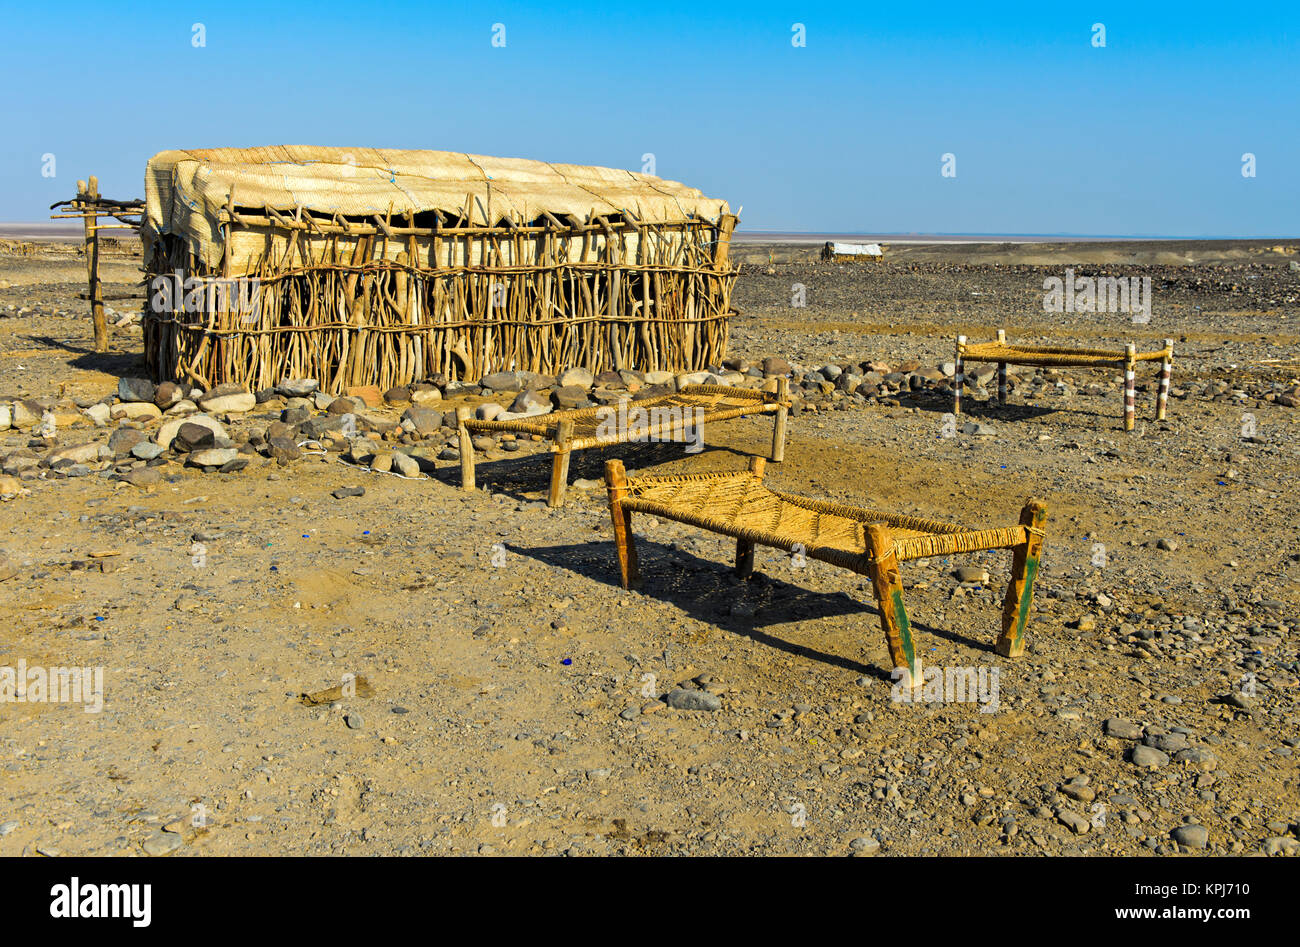 L'hébergement en plein air, en plein air d'appoint à partir de sisal dans le désert de Danakil, Hamed Ela, dépression Danakil, région Afar, Ethiopie Banque D'Images